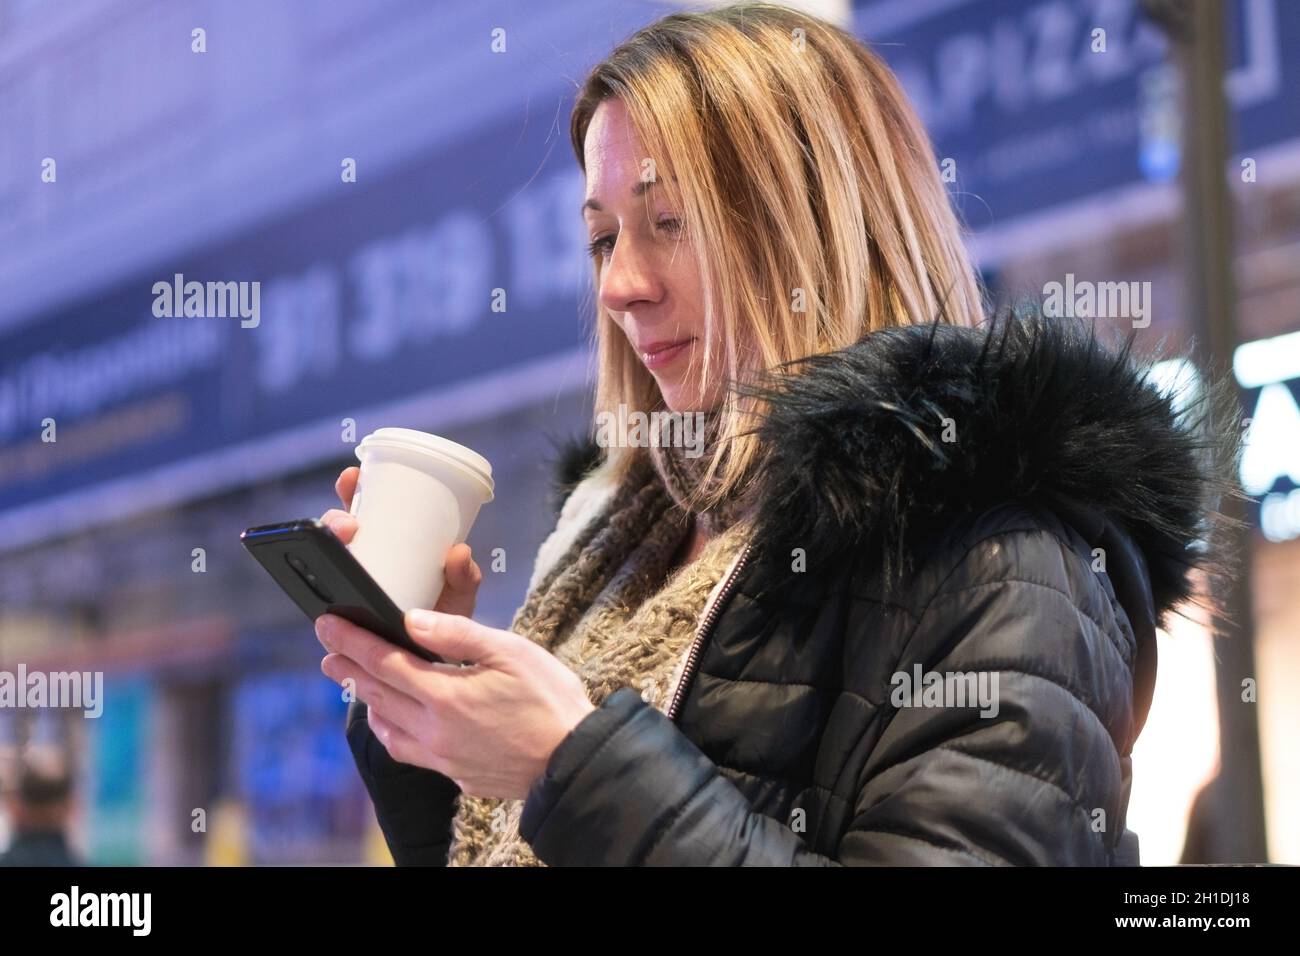 Hübsche, junge Frau mit Smartphone und Kaffee Lächeln glücklich in der Stadt bei Nacht. Stockfoto